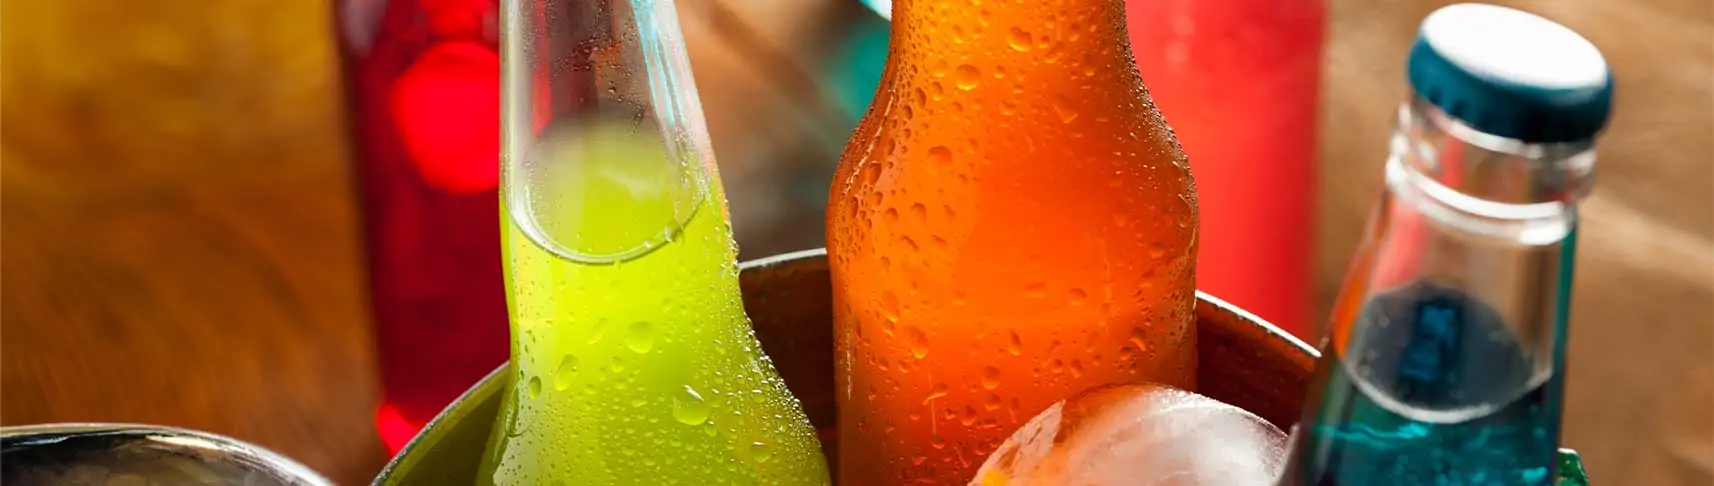 saudi soft drinks header